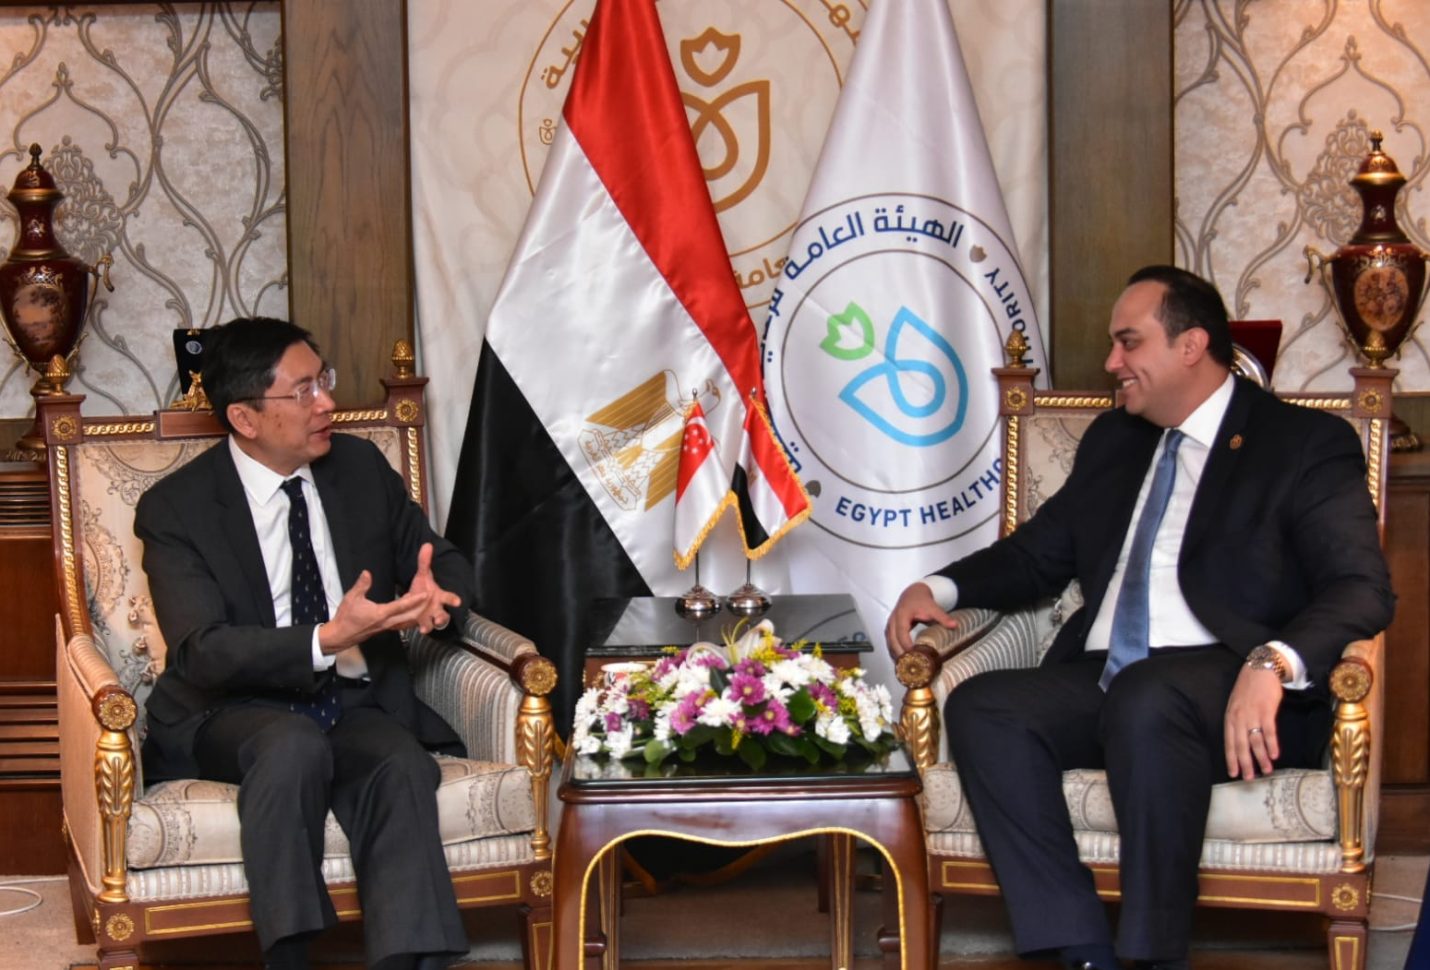 الرعاية الصحية: نسعى لتعزيز مكانة مصر كوجهة عالمية رائدة في الرعاية الصحية والاستثمار